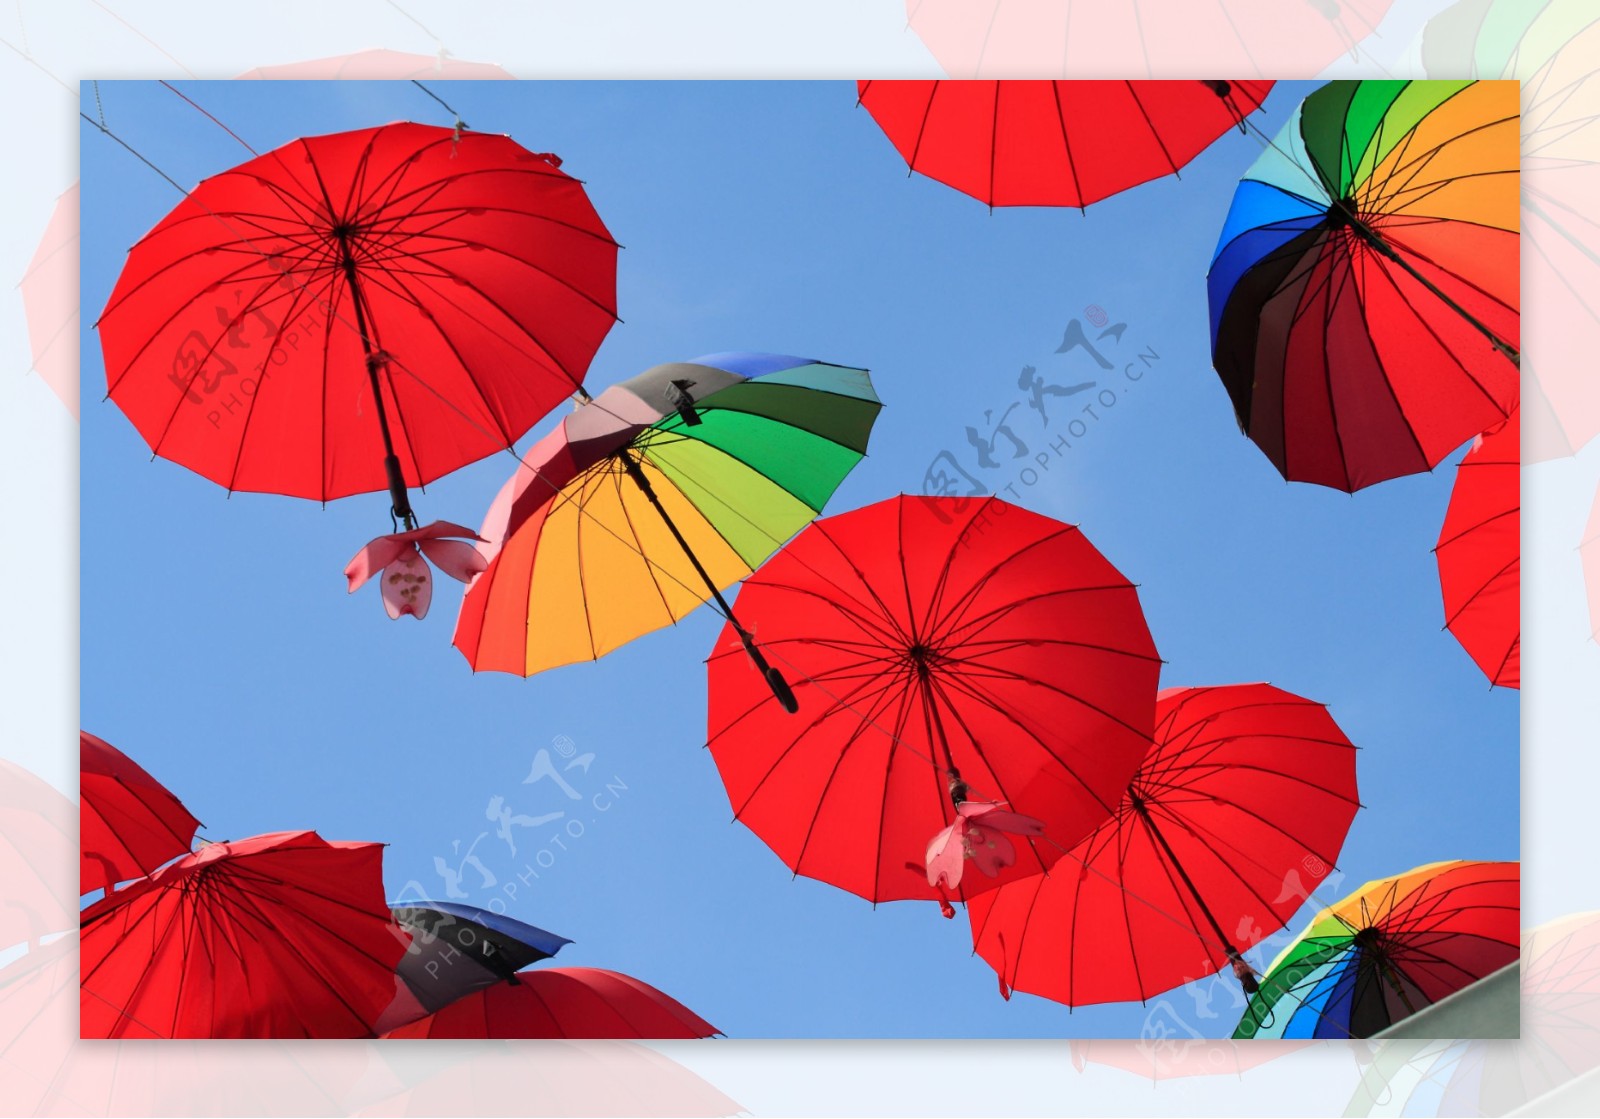 古典防雨油纸伞舞蹈演出伞工艺伞吊顶装饰纸伞油纸伞定制-阿里巴巴